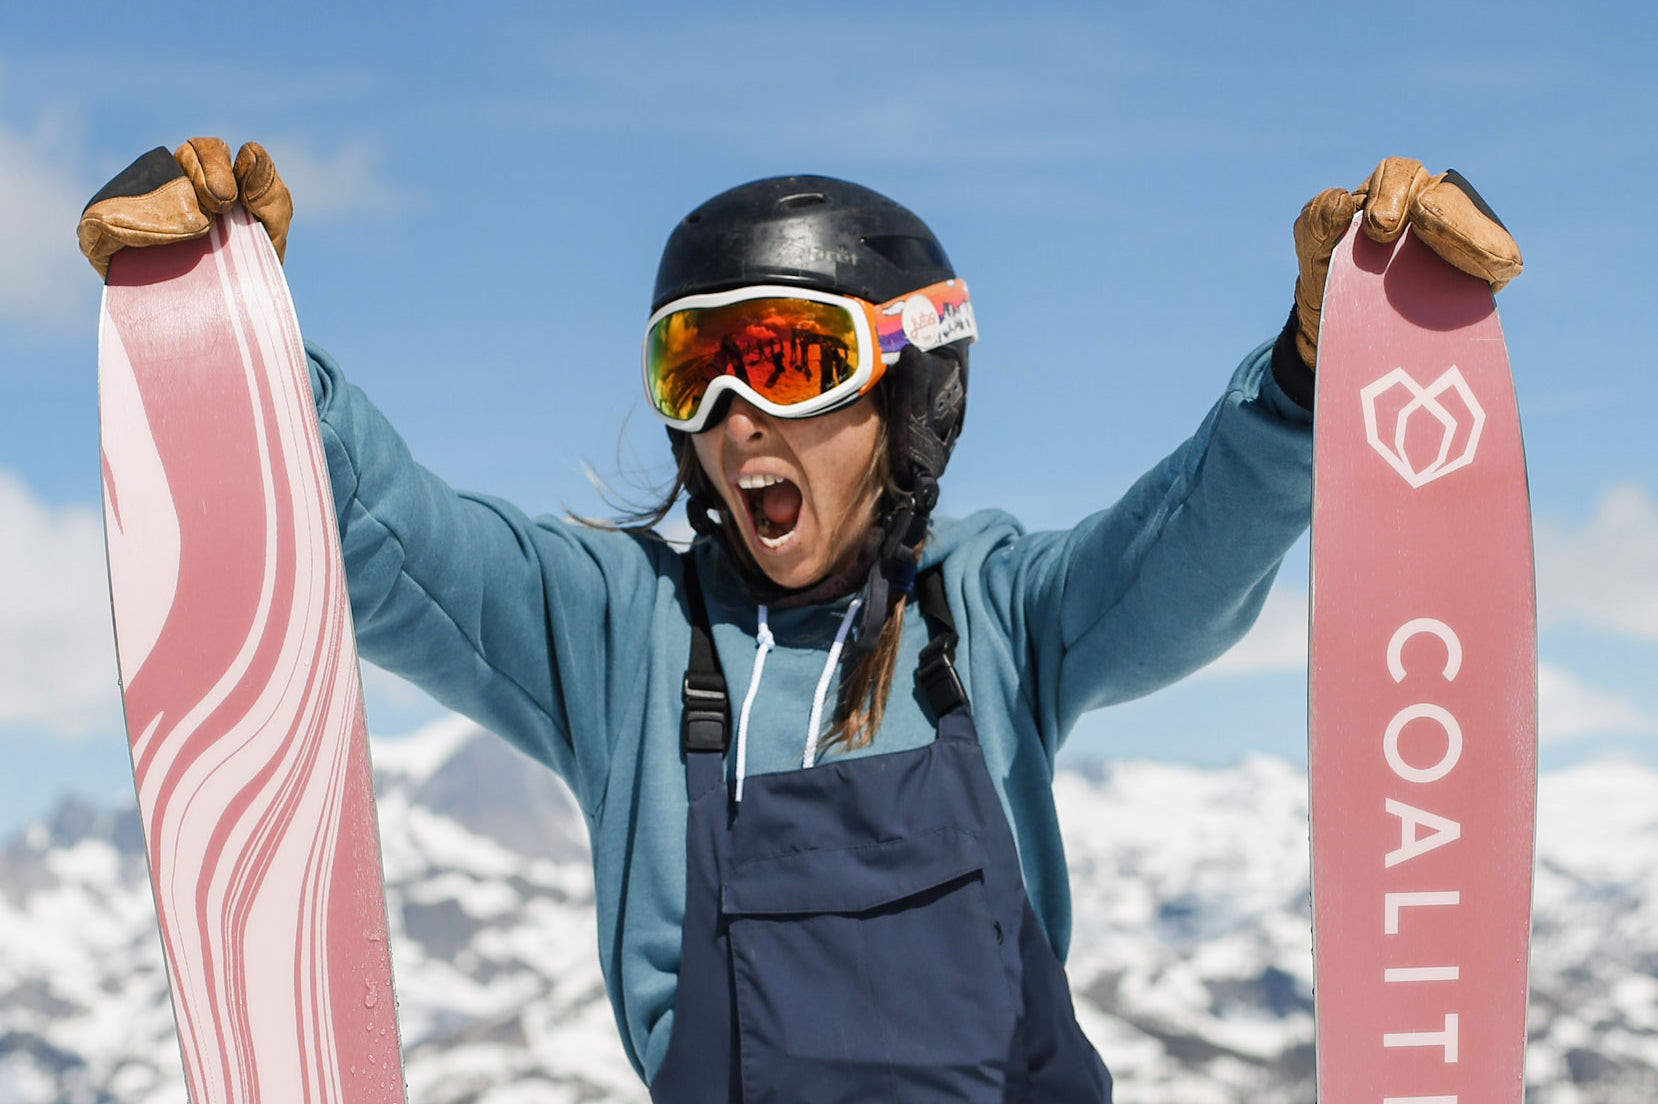 La Nieve Backcountry Ski | For Goddess Sake